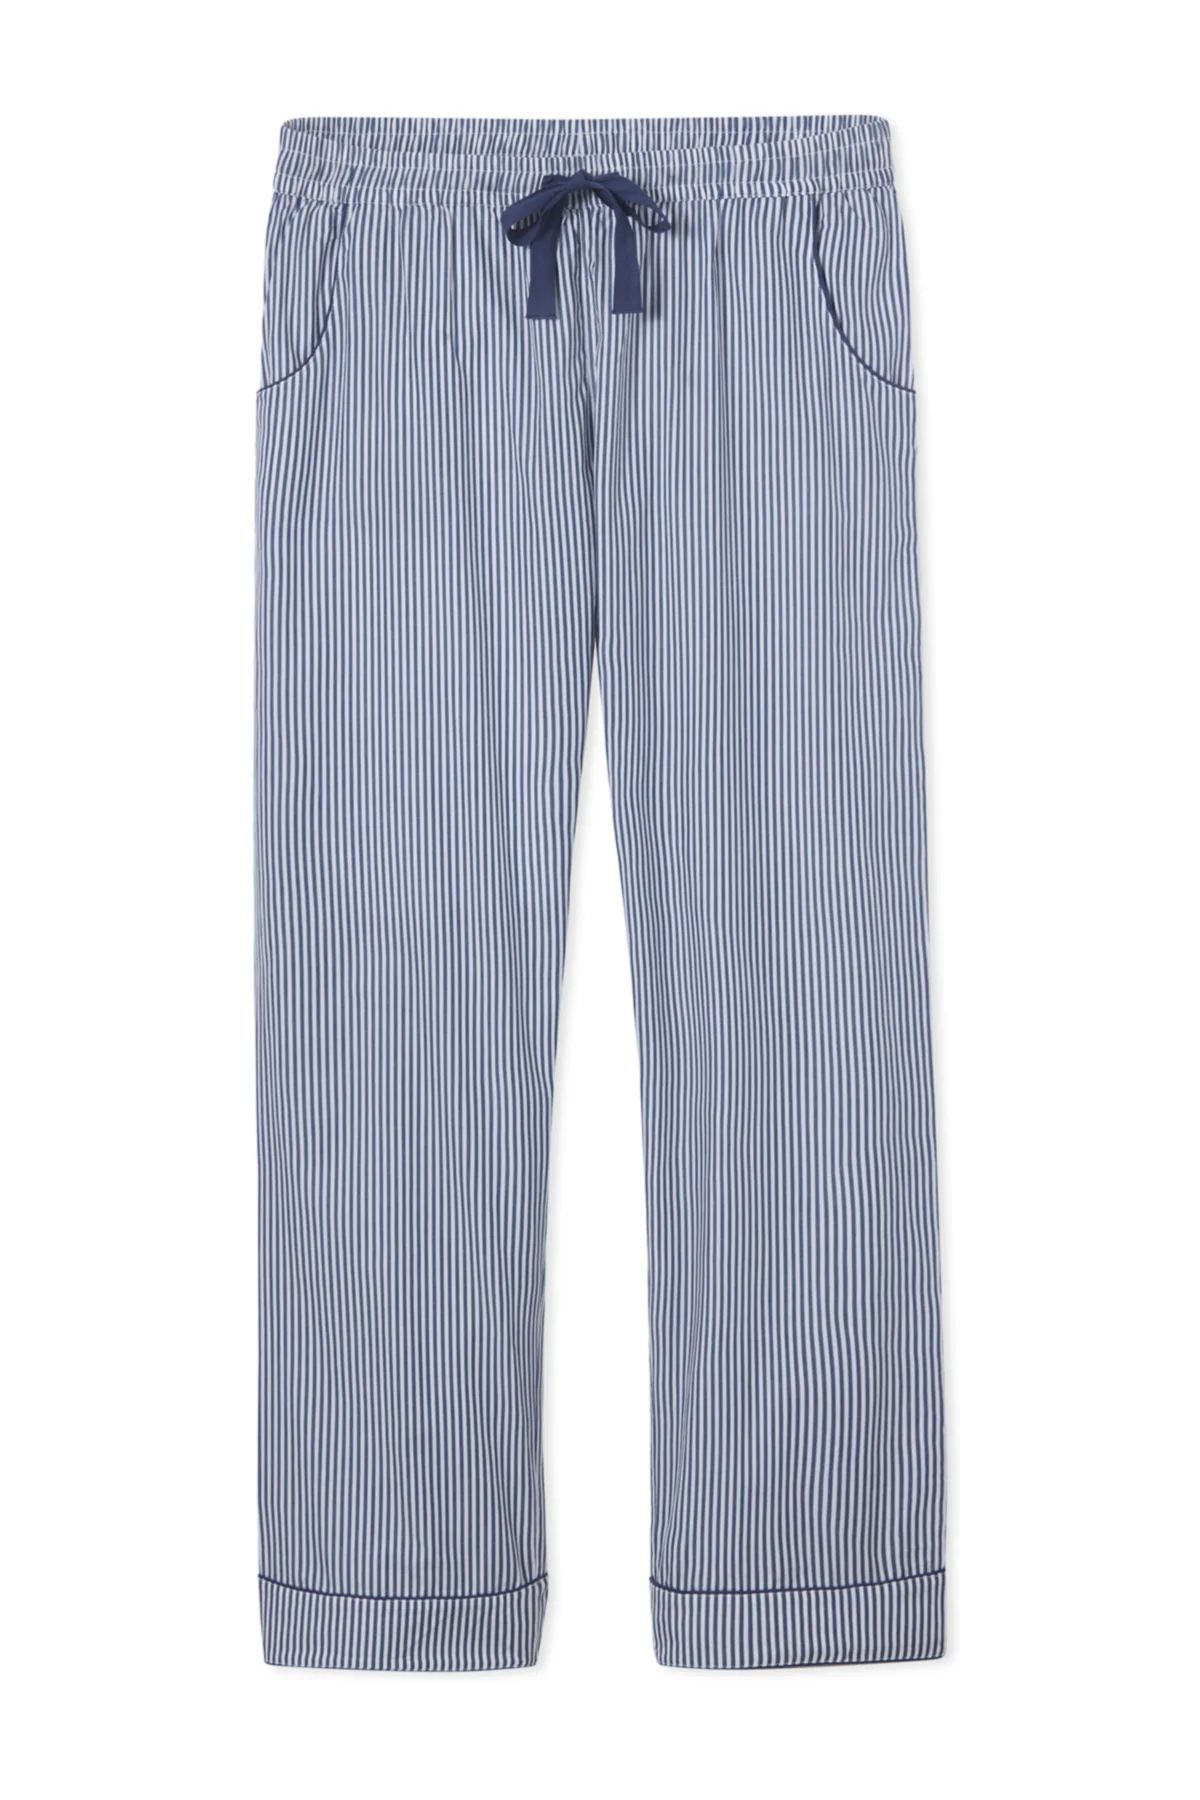 Men's Poplin Pajama Pants in Navy Stripe | LAKE Pajamas